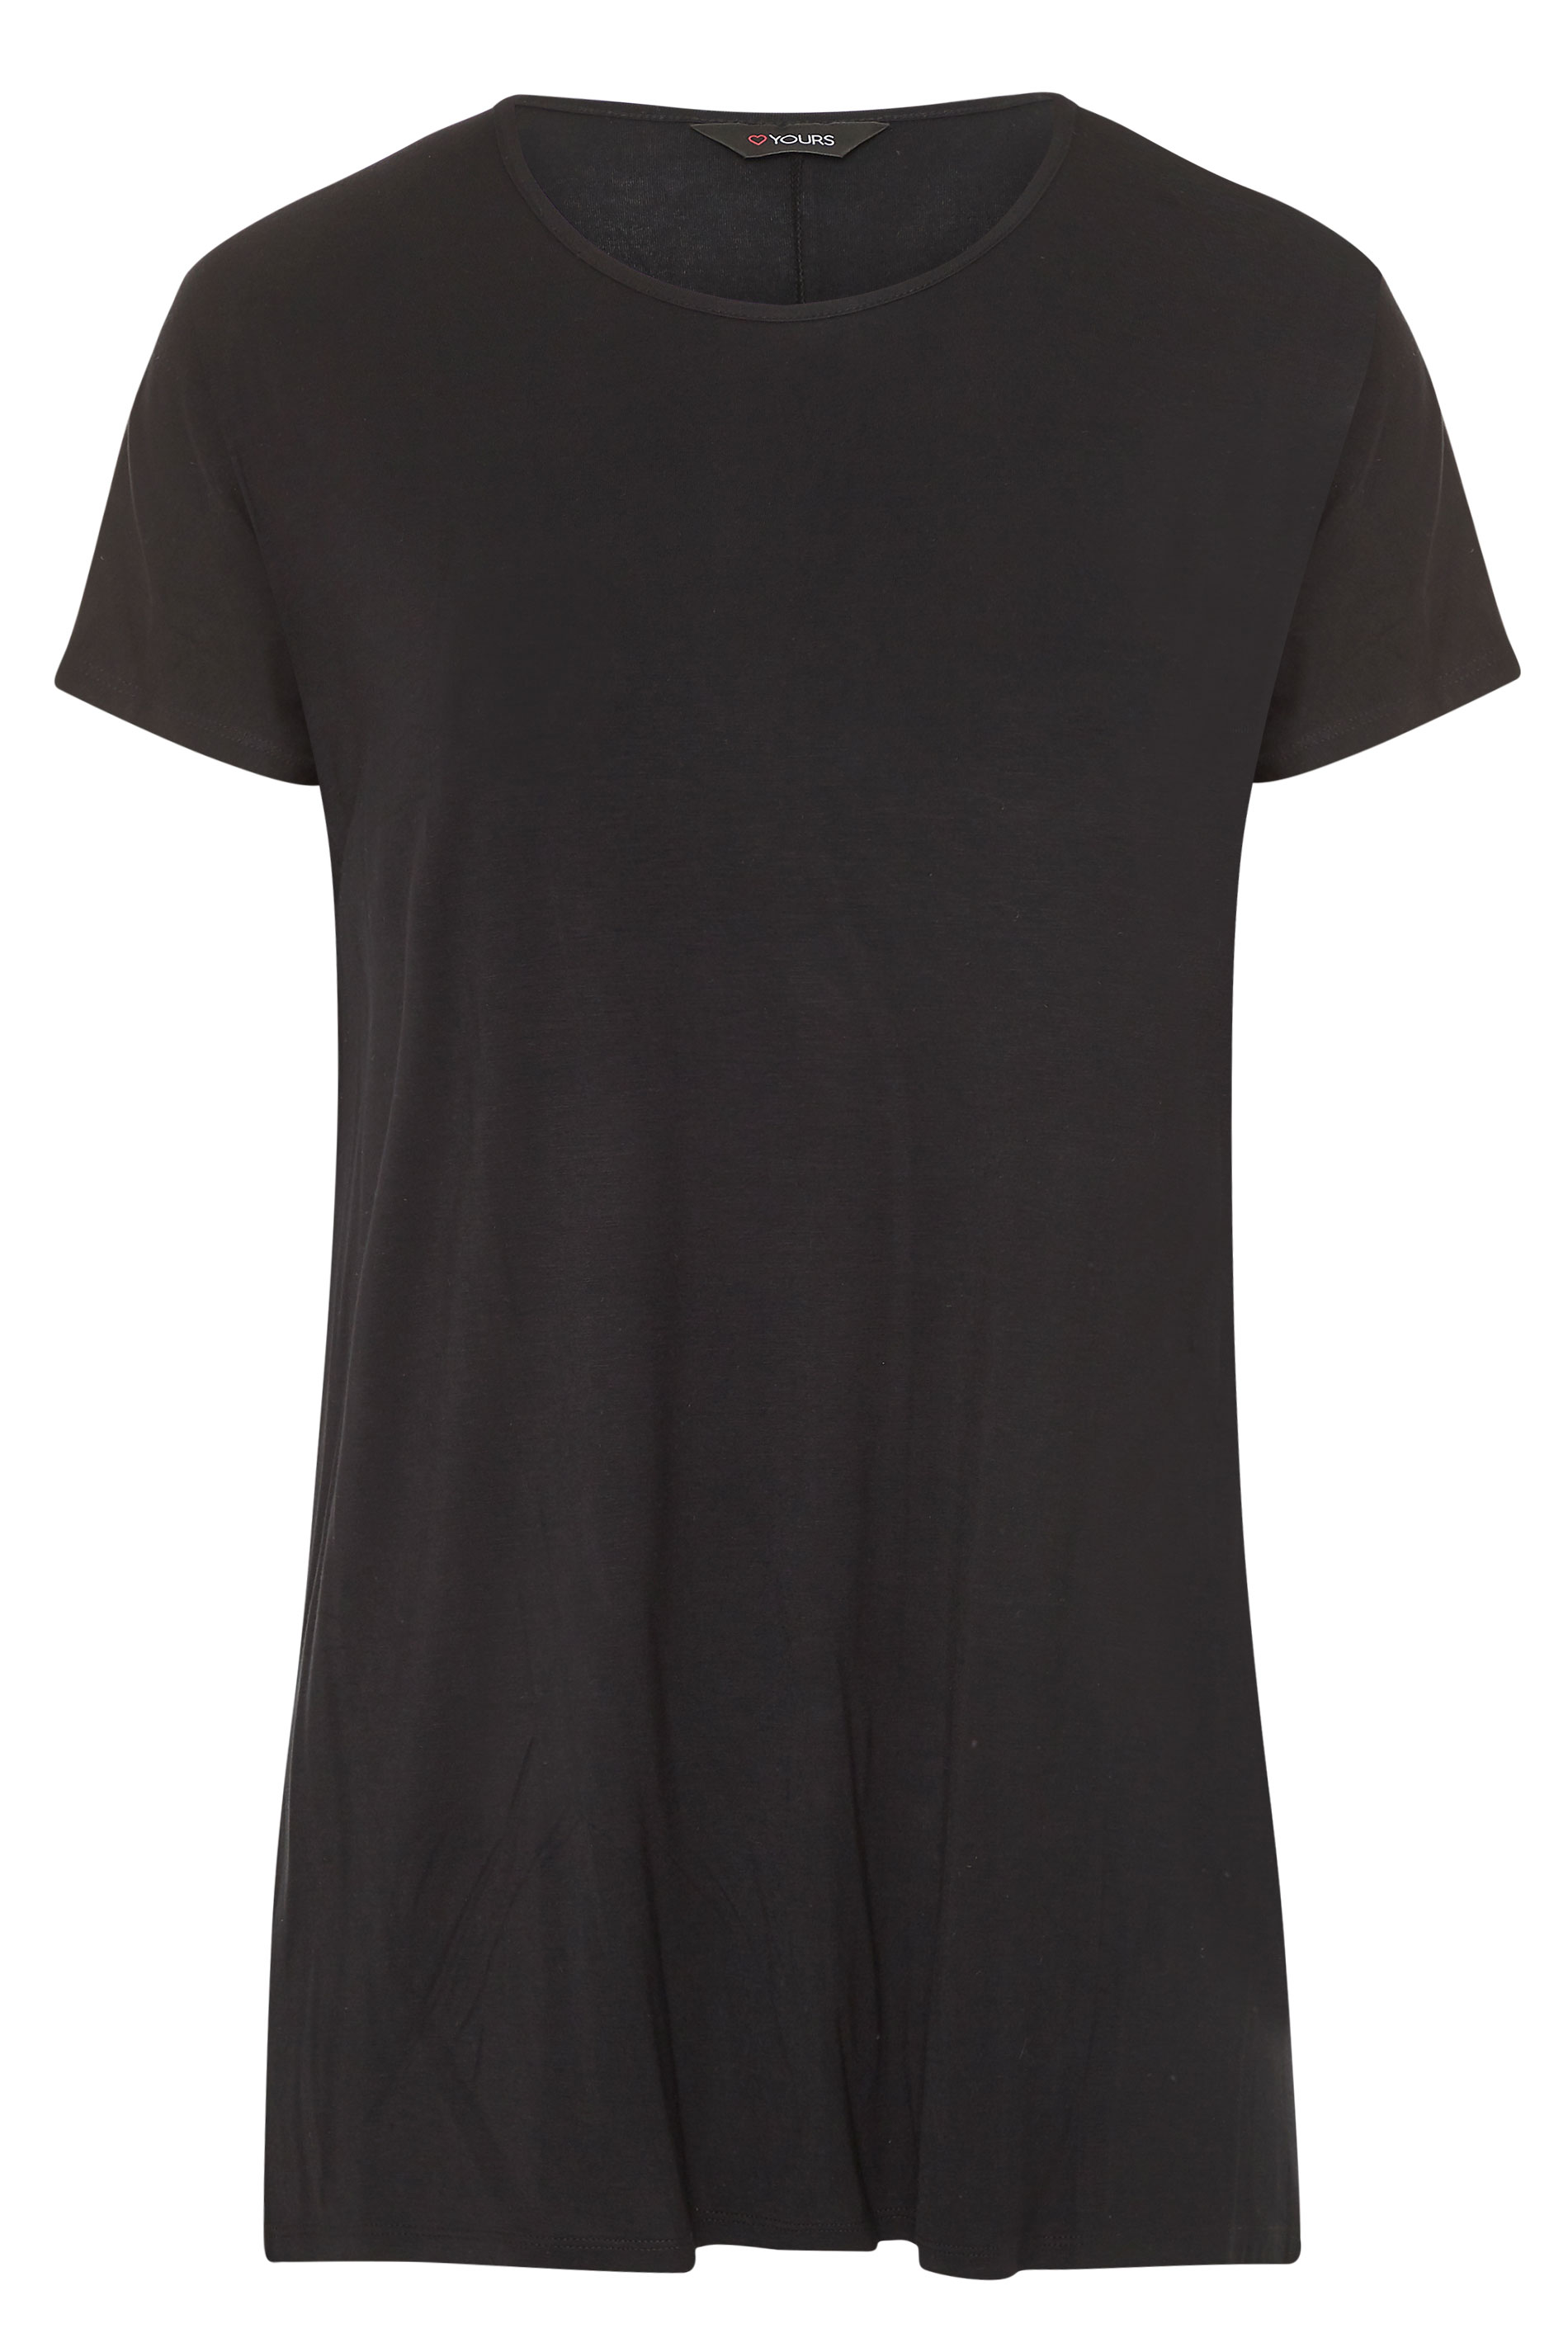 Grande taille  Tops Grande taille  T-Shirts Basiques & Débardeurs | Top Noir en Jersey Ourlet Plongeant - WP12301